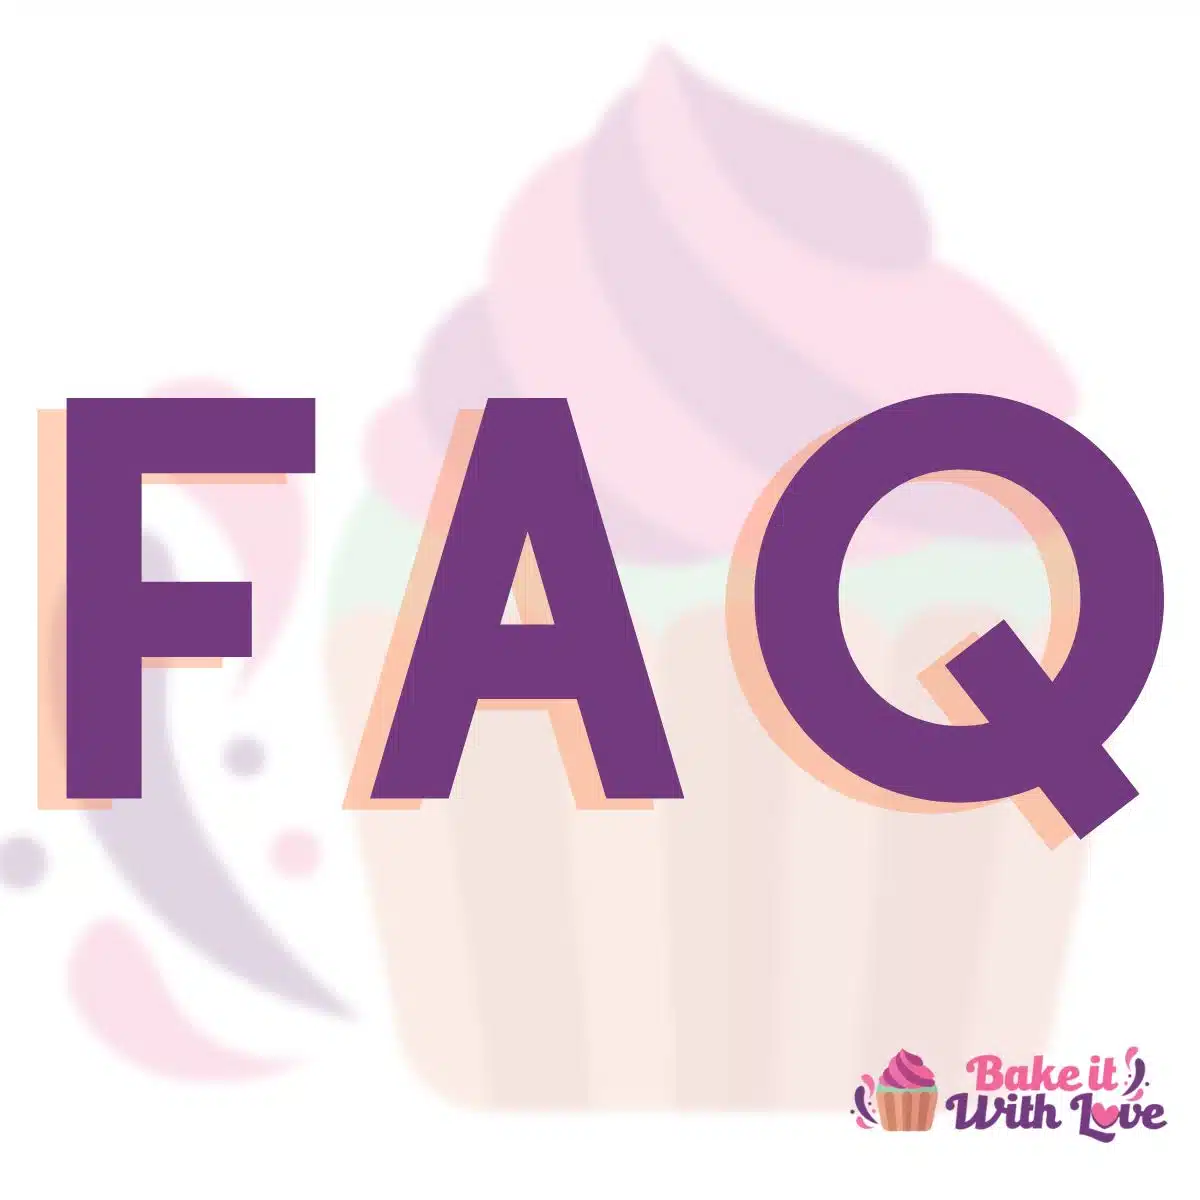 Consultez ma FAQ pour les questions fréquemment posées sur les recettes, les commentaires et bien plus encore ici sur le site Bake It With Love. Il existe de nombreuses questions et réponses intéressantes pour vous aider à tirer le meilleur parti du site !